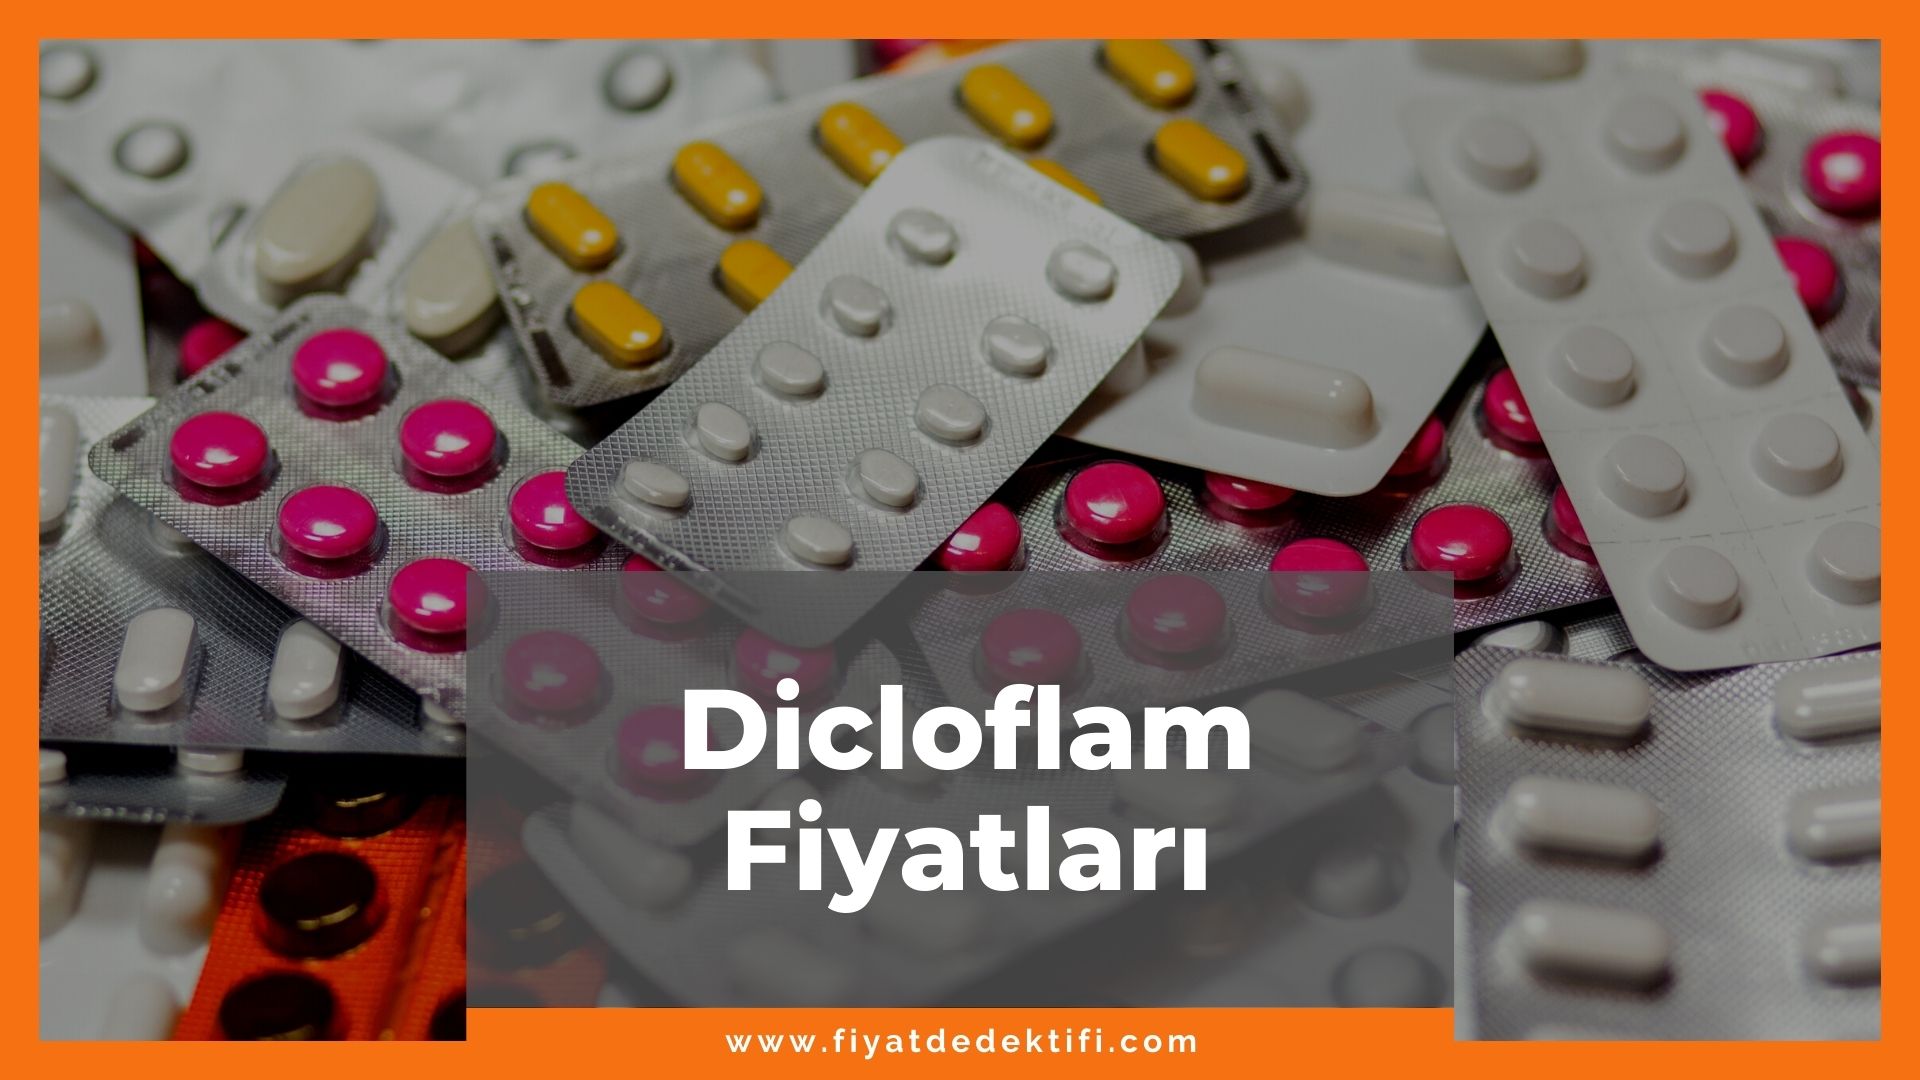 Dicloflam Fiyat 2021, Dicloflam Fiyatı, Dicloflam 20 Draje Fiyatı, dicloflam zamlandı mı, dicloflam zamlı fiyat ne kadar oldu